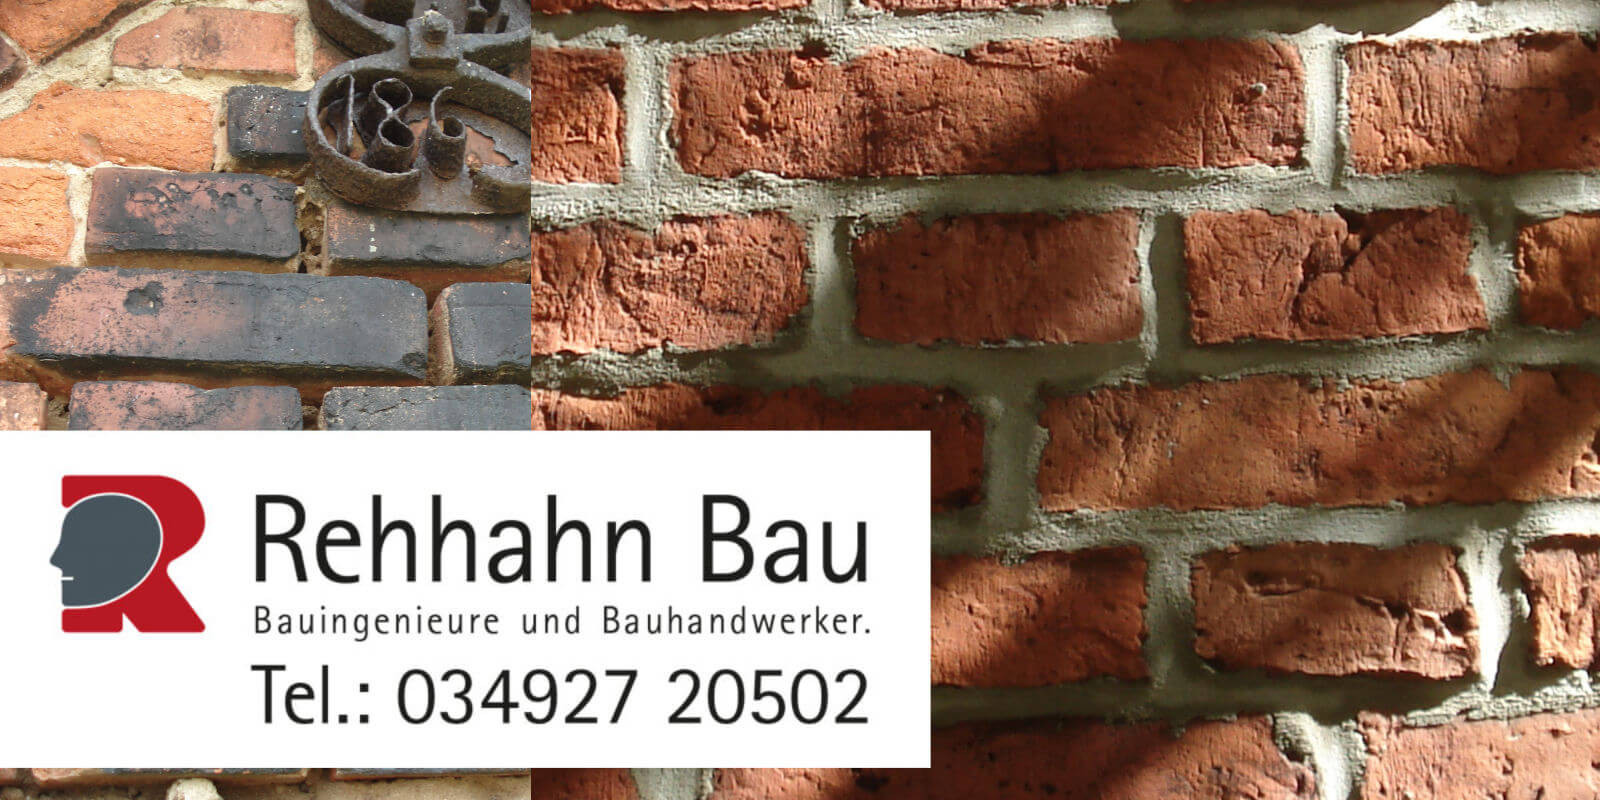 Rehhahn Bau – Spezia­listen für denk­mal­­ge­rechte Sanie­rung in der Welt­­erbe­­Region Anhalt-Dessau-Witten­berg.